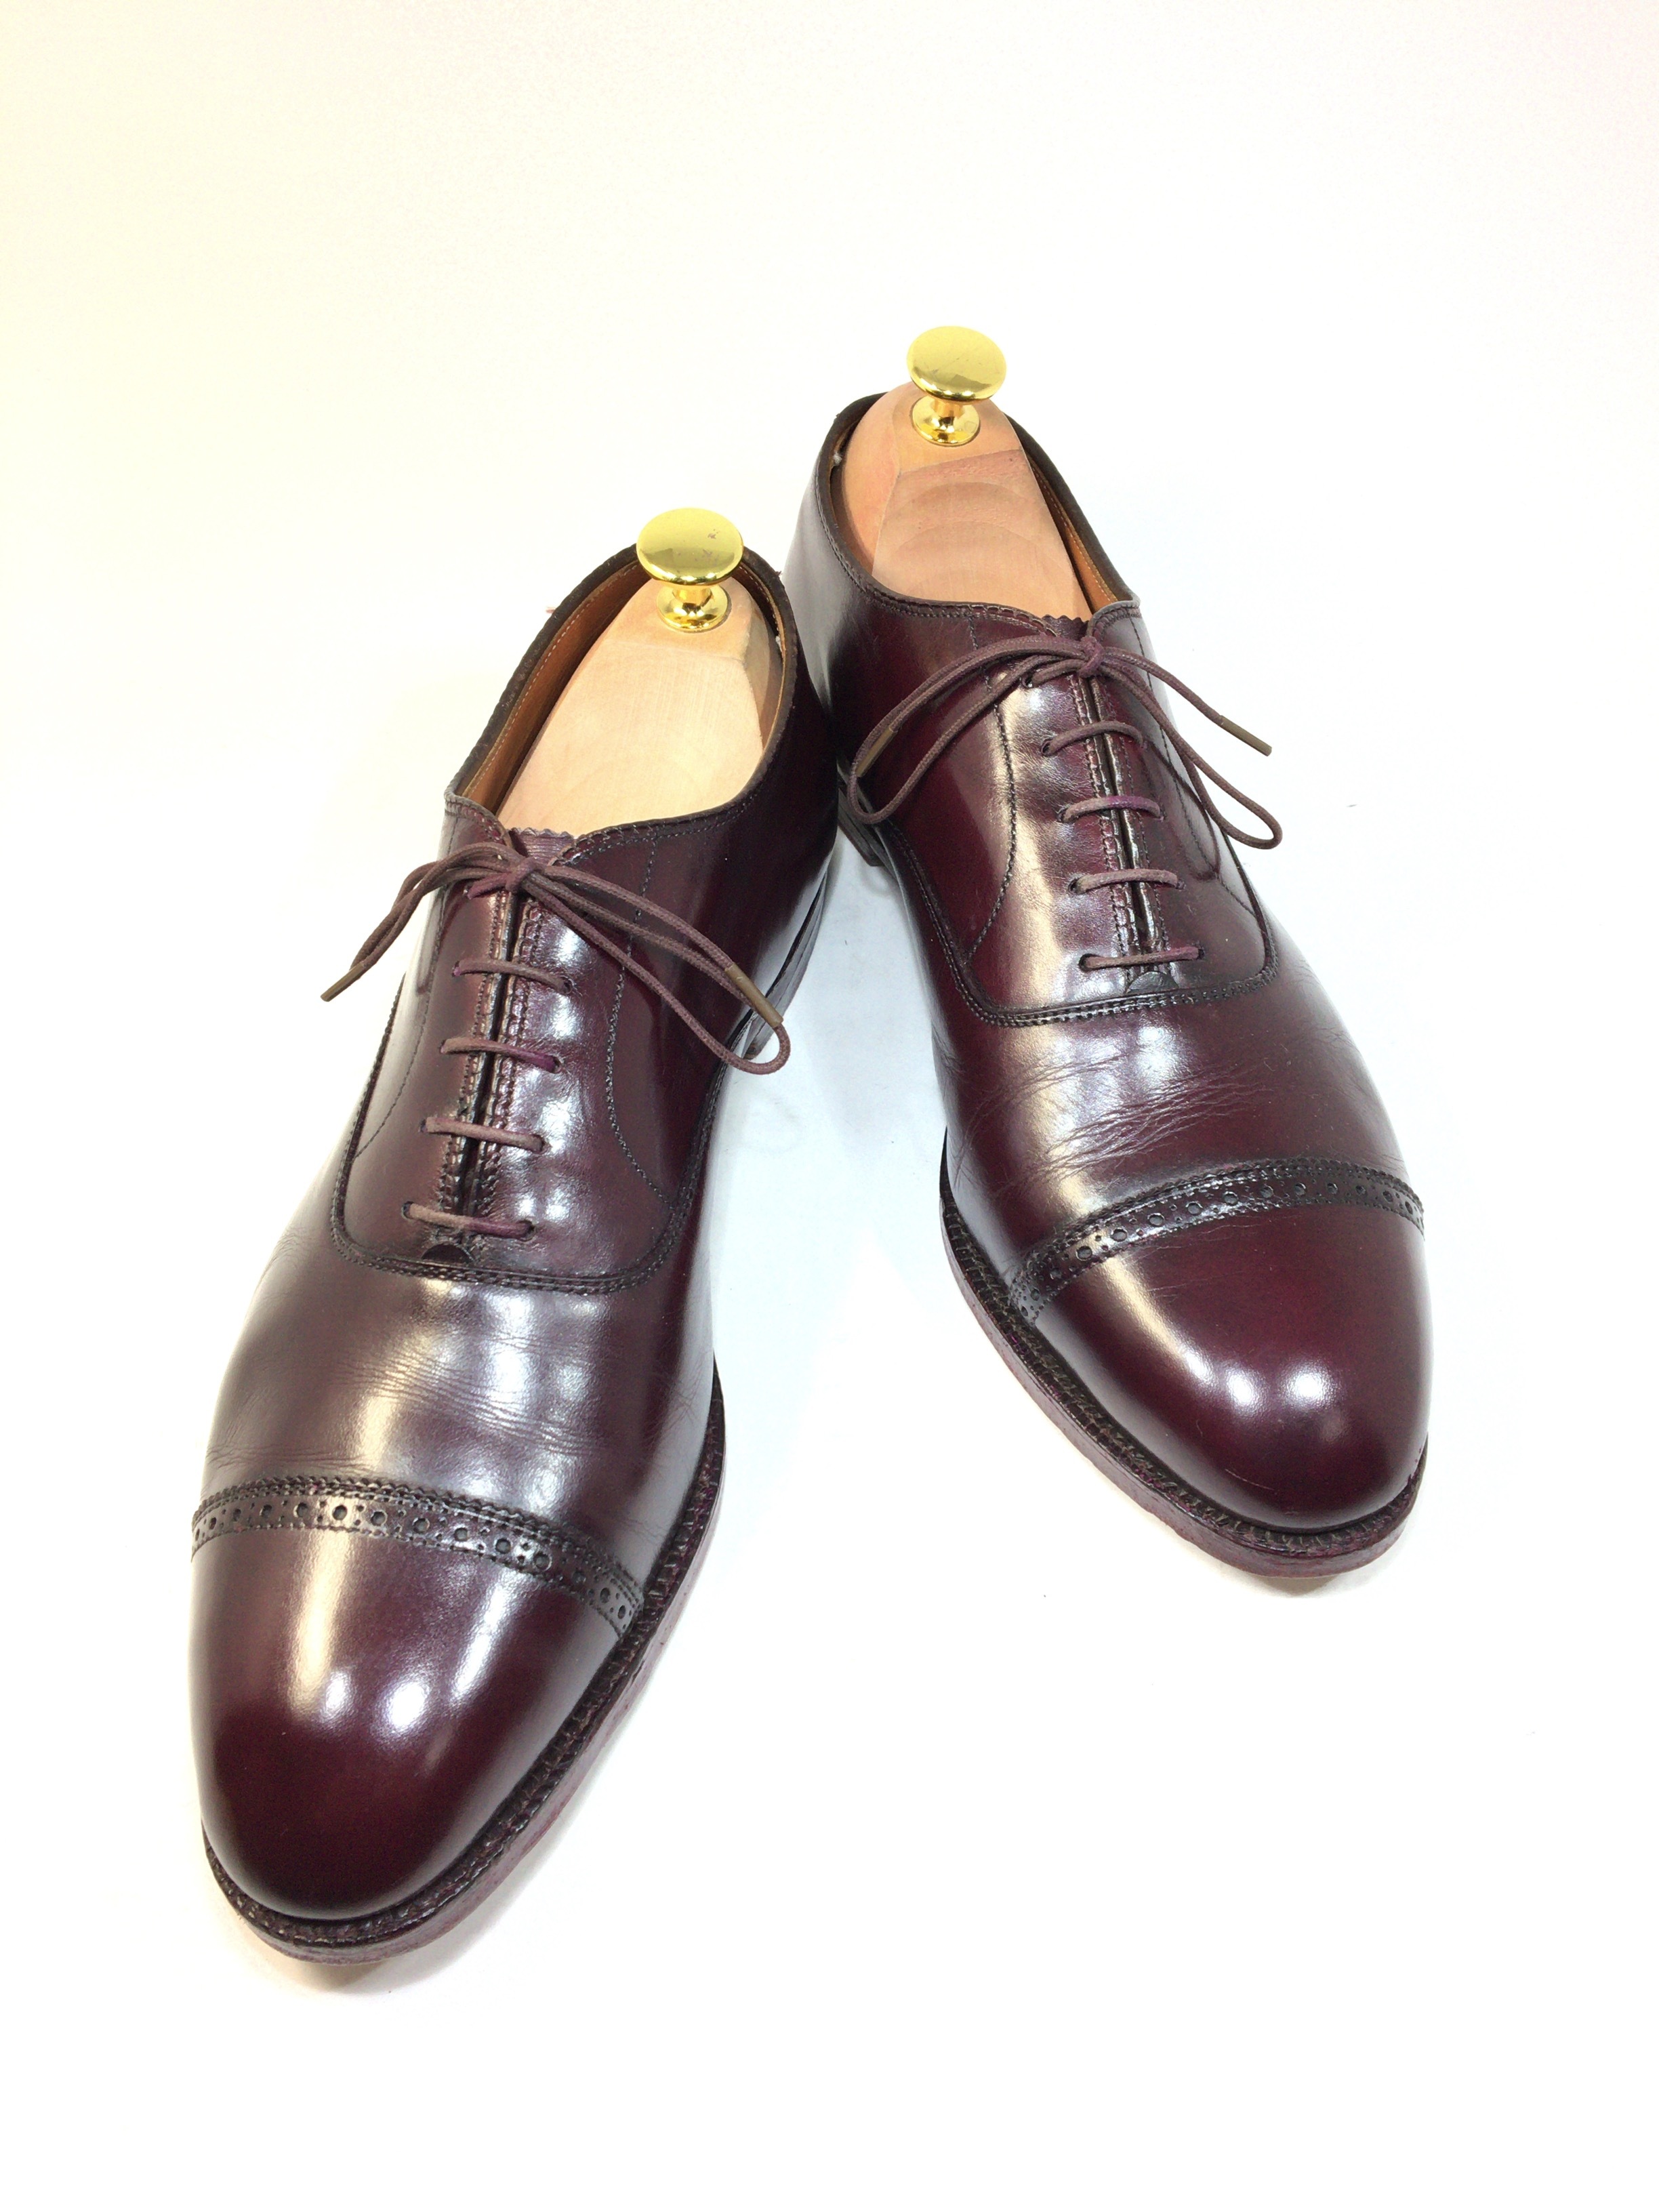 オールデン ALDEN セミブローグ 905 27cm | 中古靴・革靴・ブーツ通販専門店 DafsMart ダフスマート Online Shop